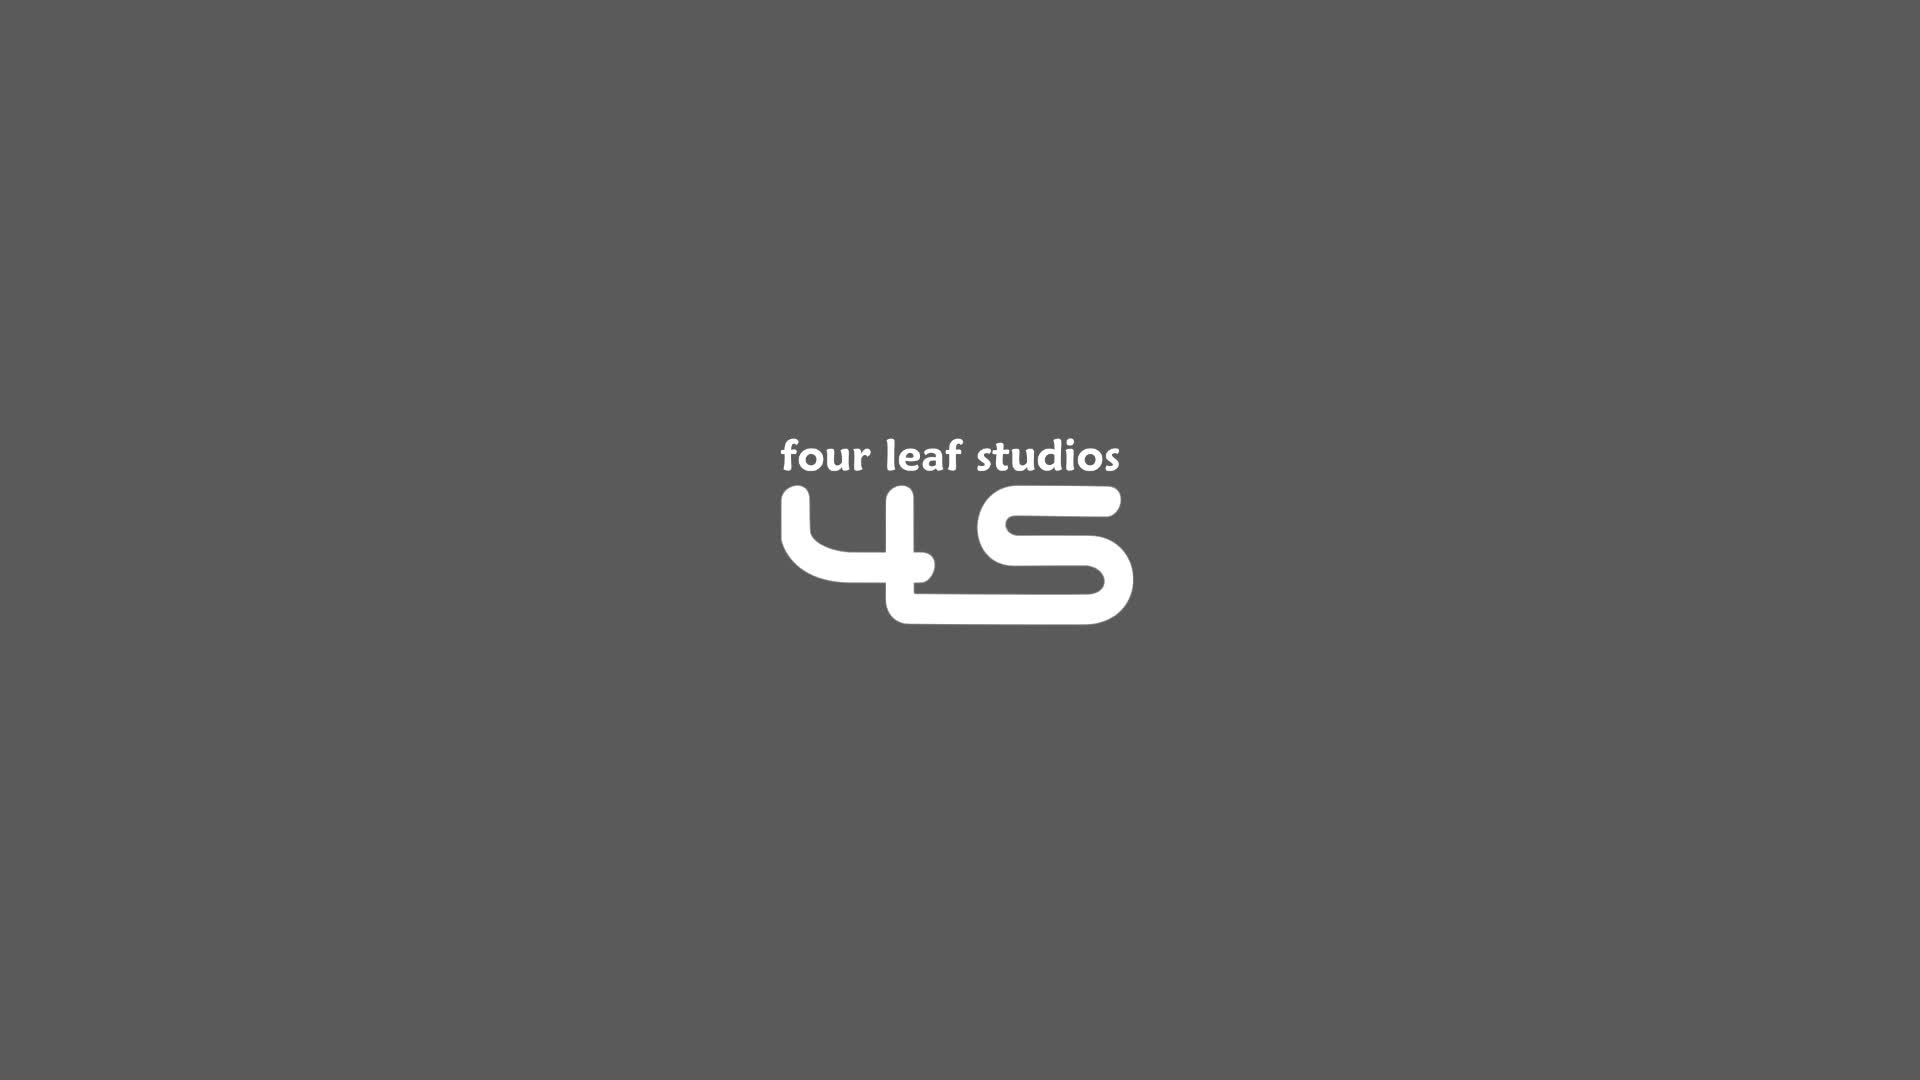 Four leaf studios